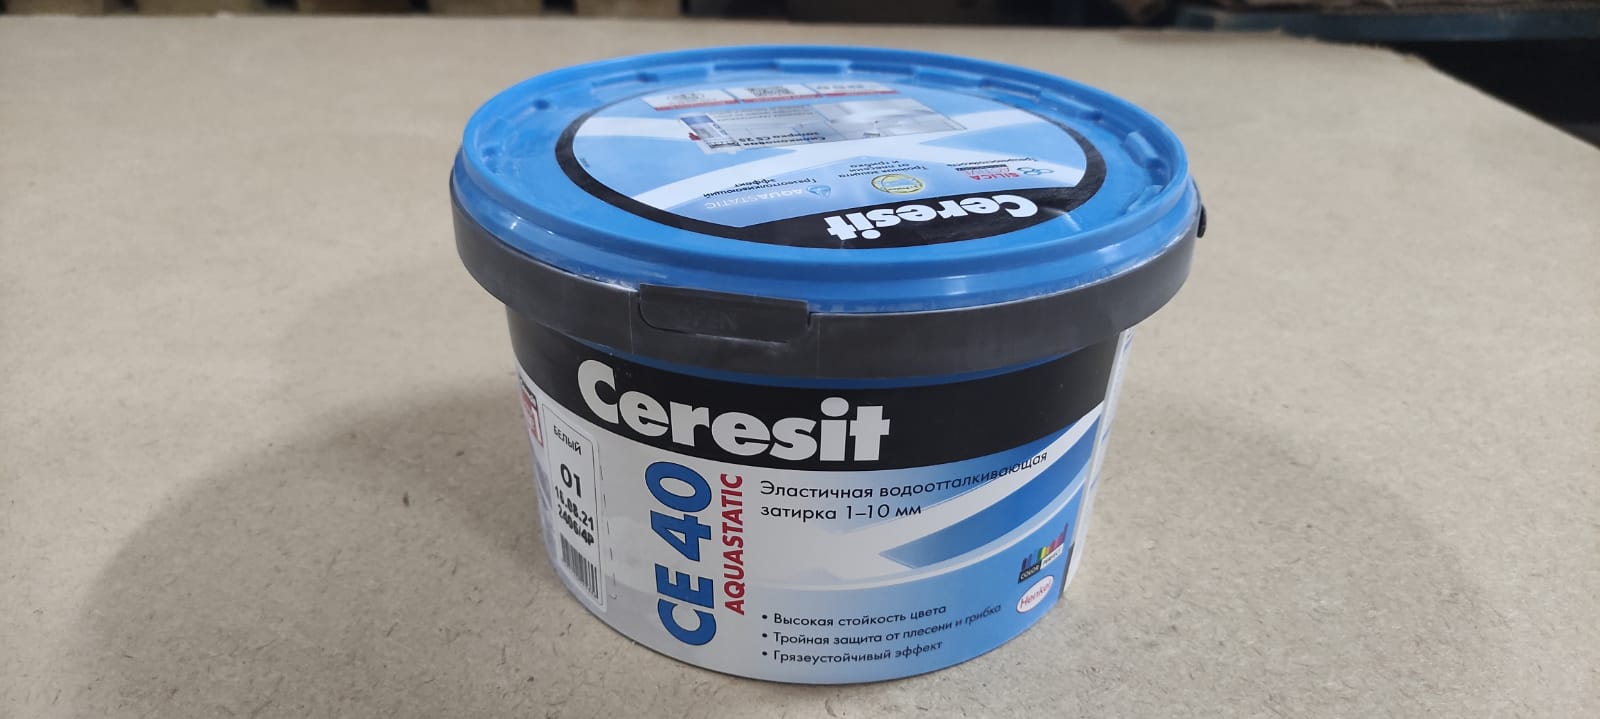 Эластичная водоотталкивающая затирка Ceresit CE 40 aquastatic 2 кг (цвет: белый)								